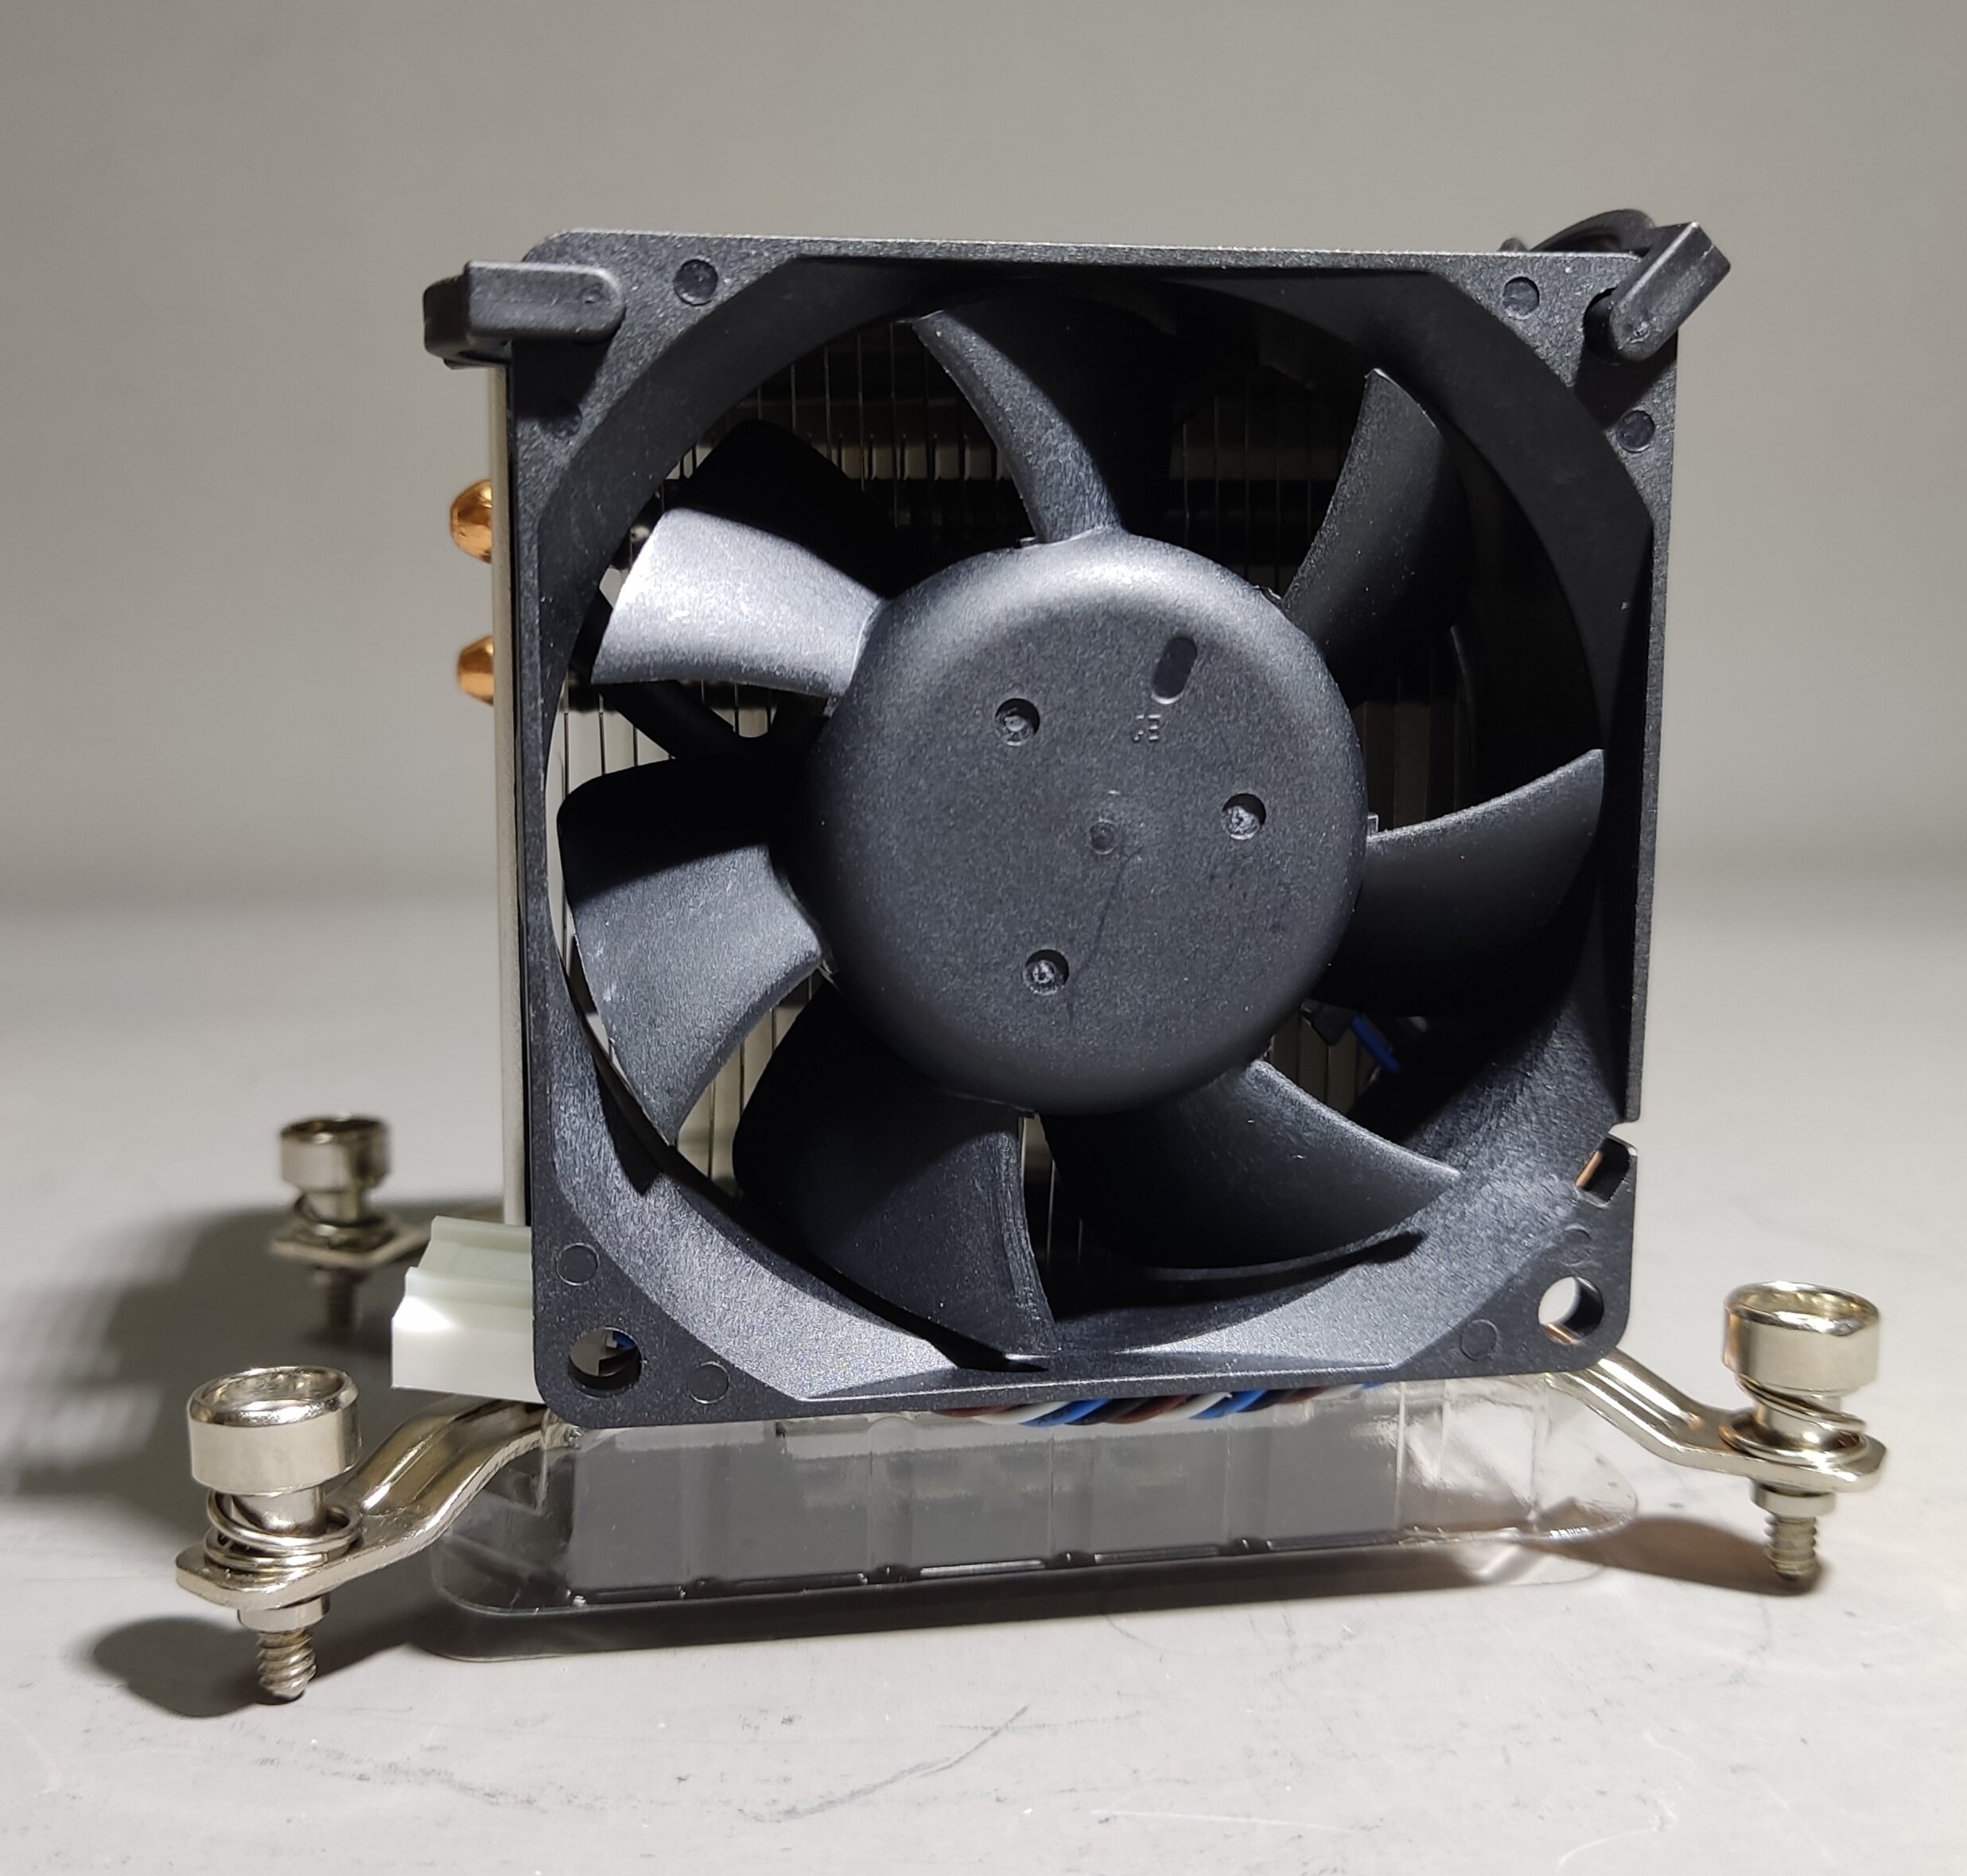 727150-001 блок радиатора/ 727150-001 Processor fan heat sink assembly